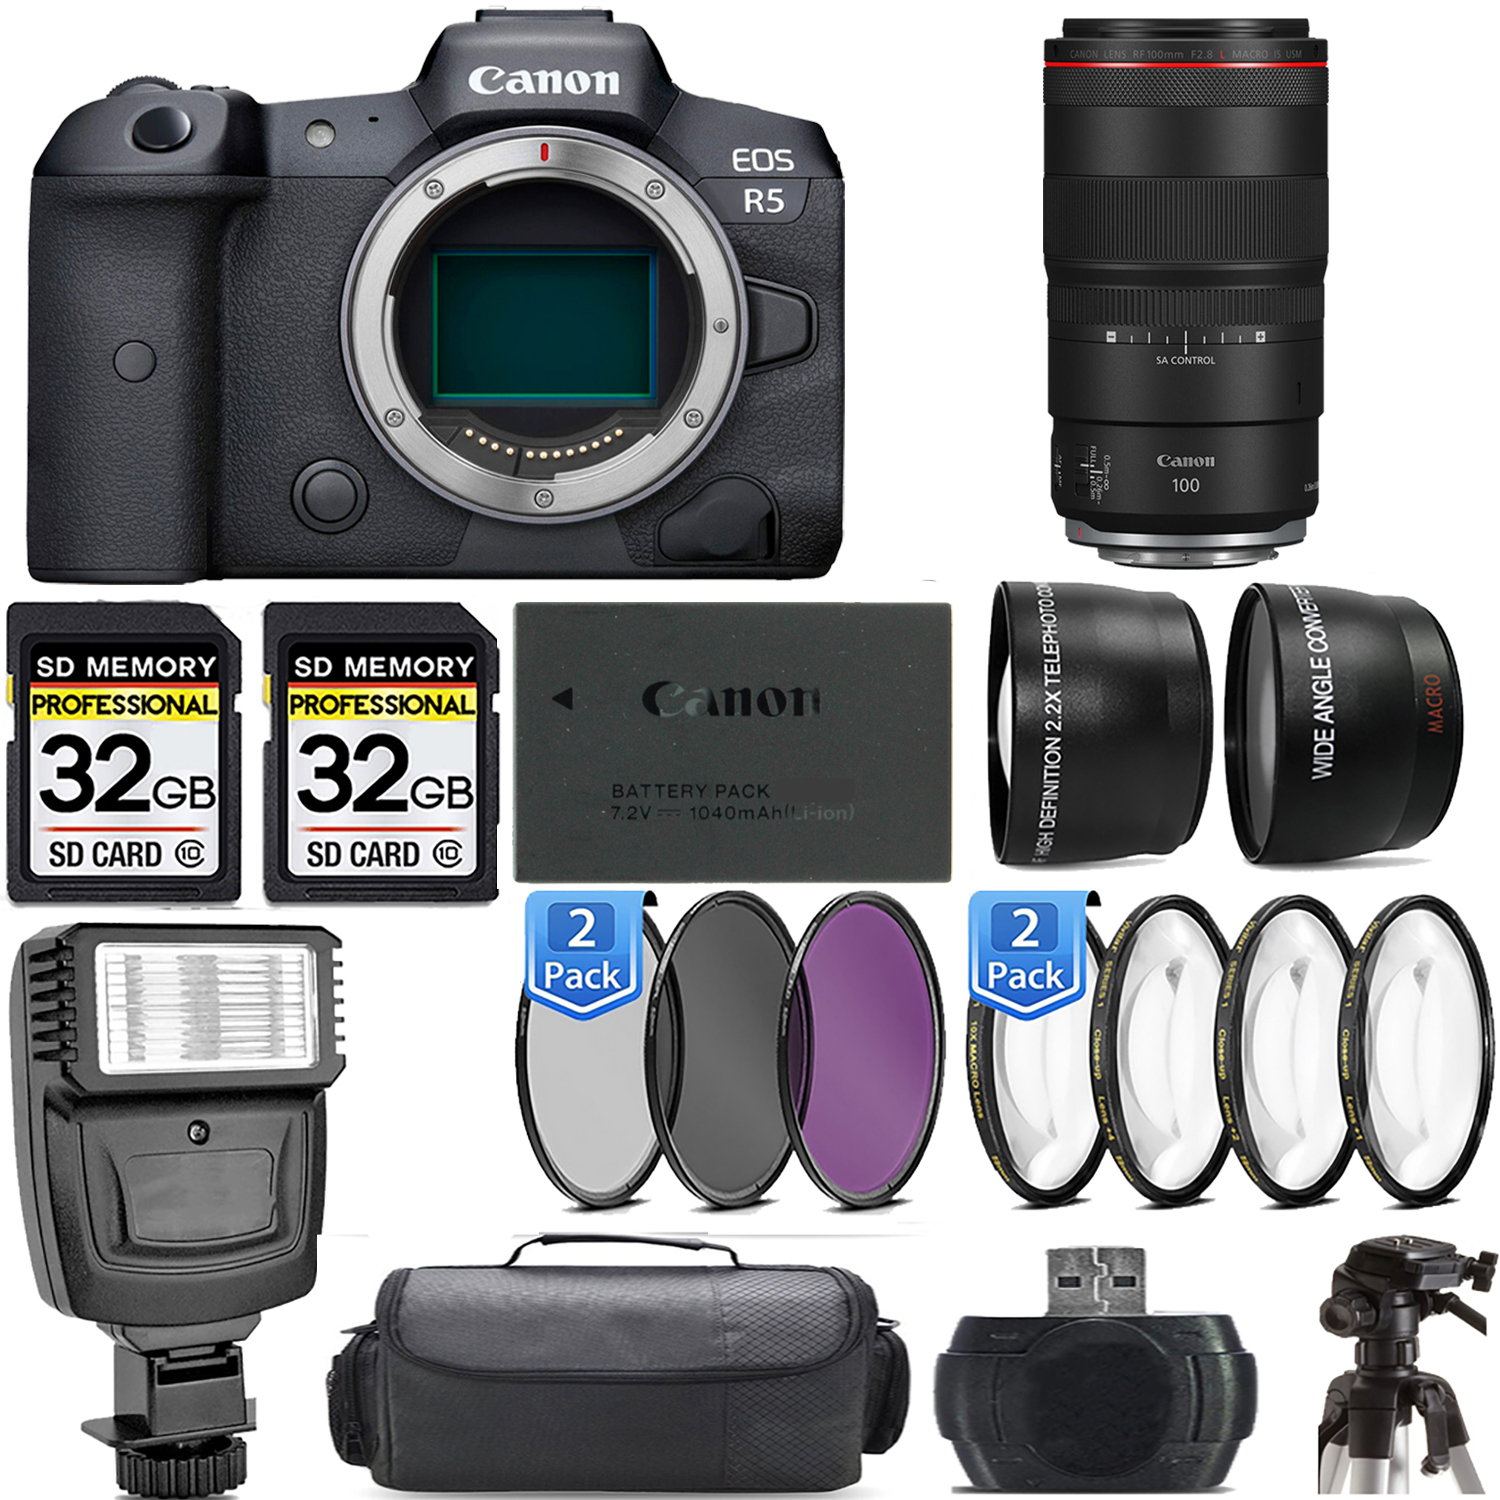 EOS R5 Mirrorless Camera + 100mm f/2.8 L Macro IS USM Lens + Flash - Kit *FREE SHIPPING*